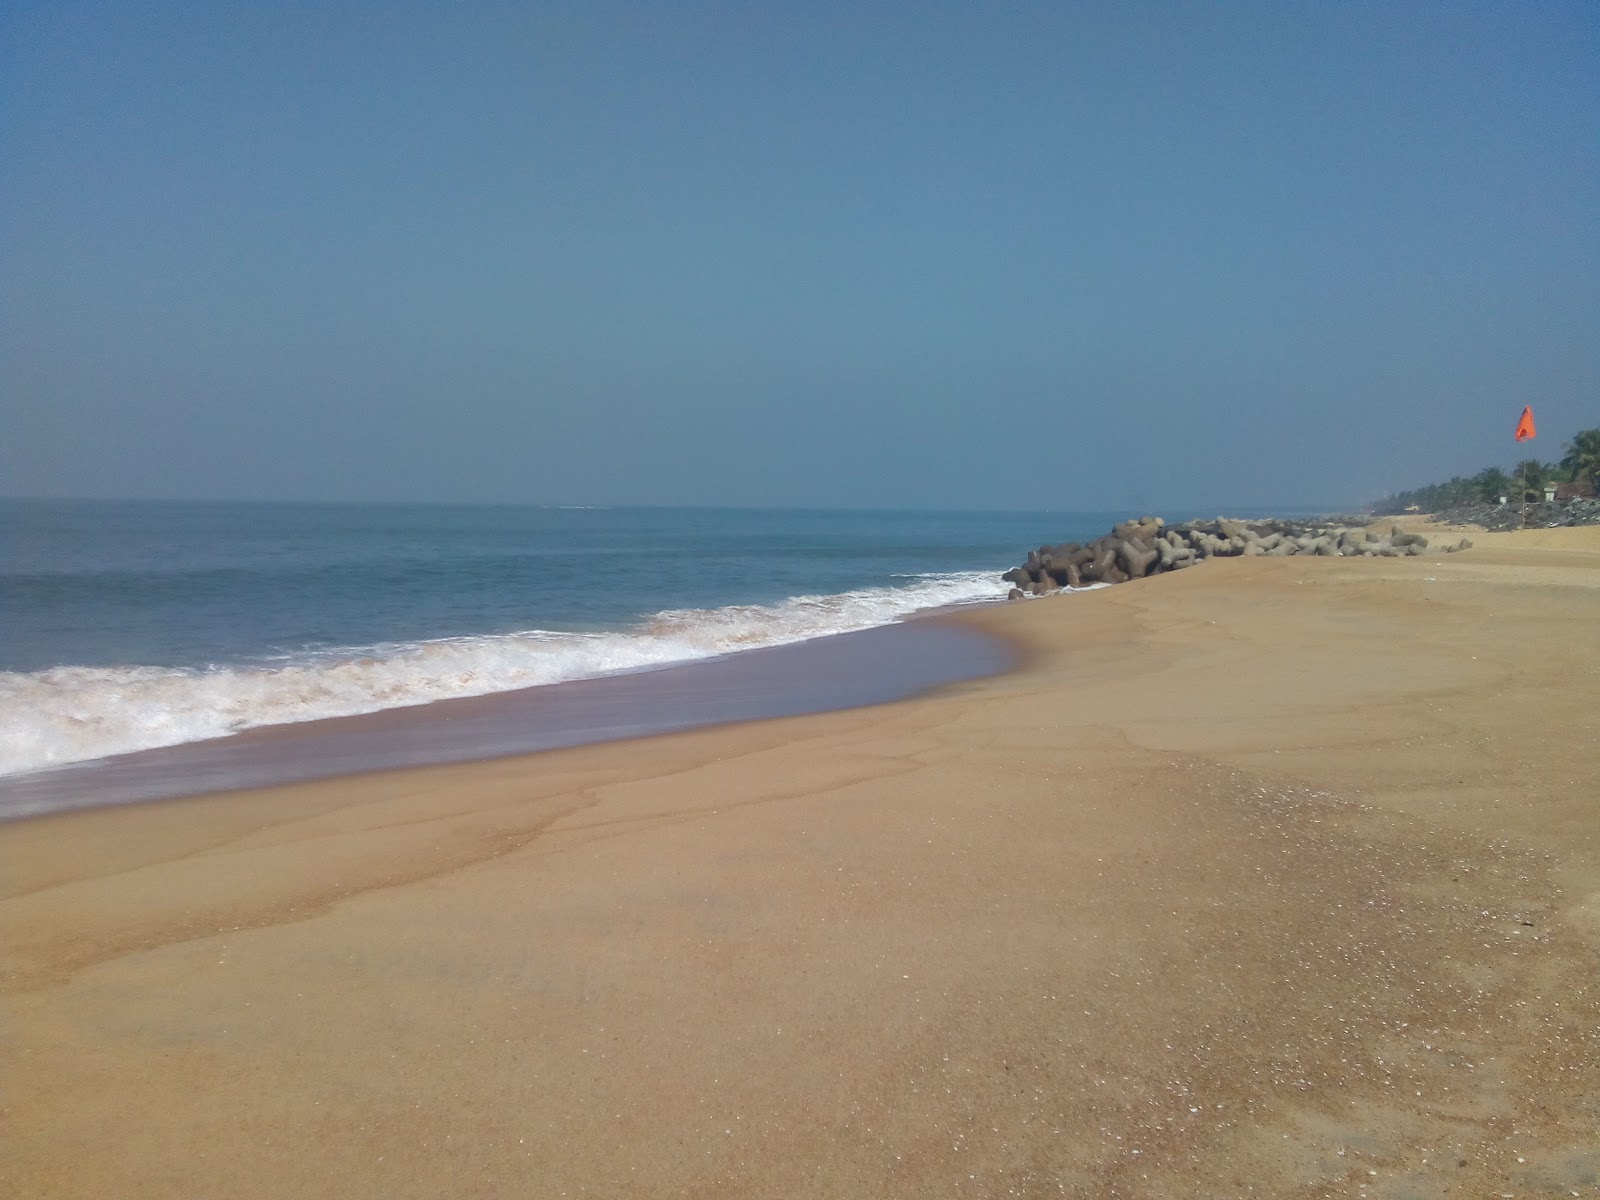 Foto von Ullal beach mit heller sand Oberfläche